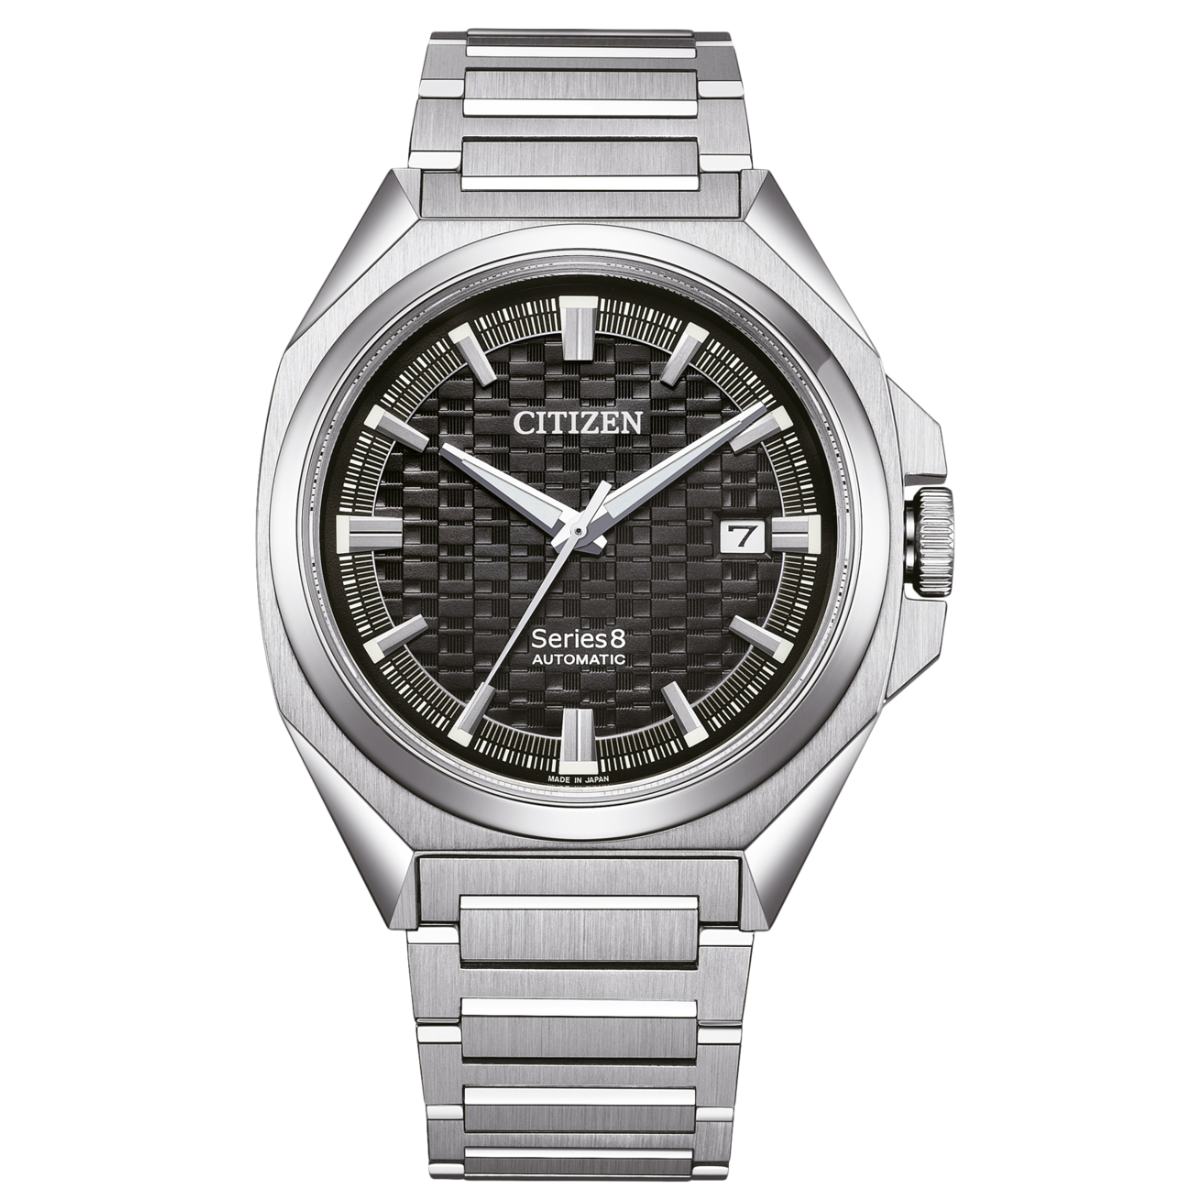 Citizen Series8 831 Automatic Men's Watch NB6050-51E